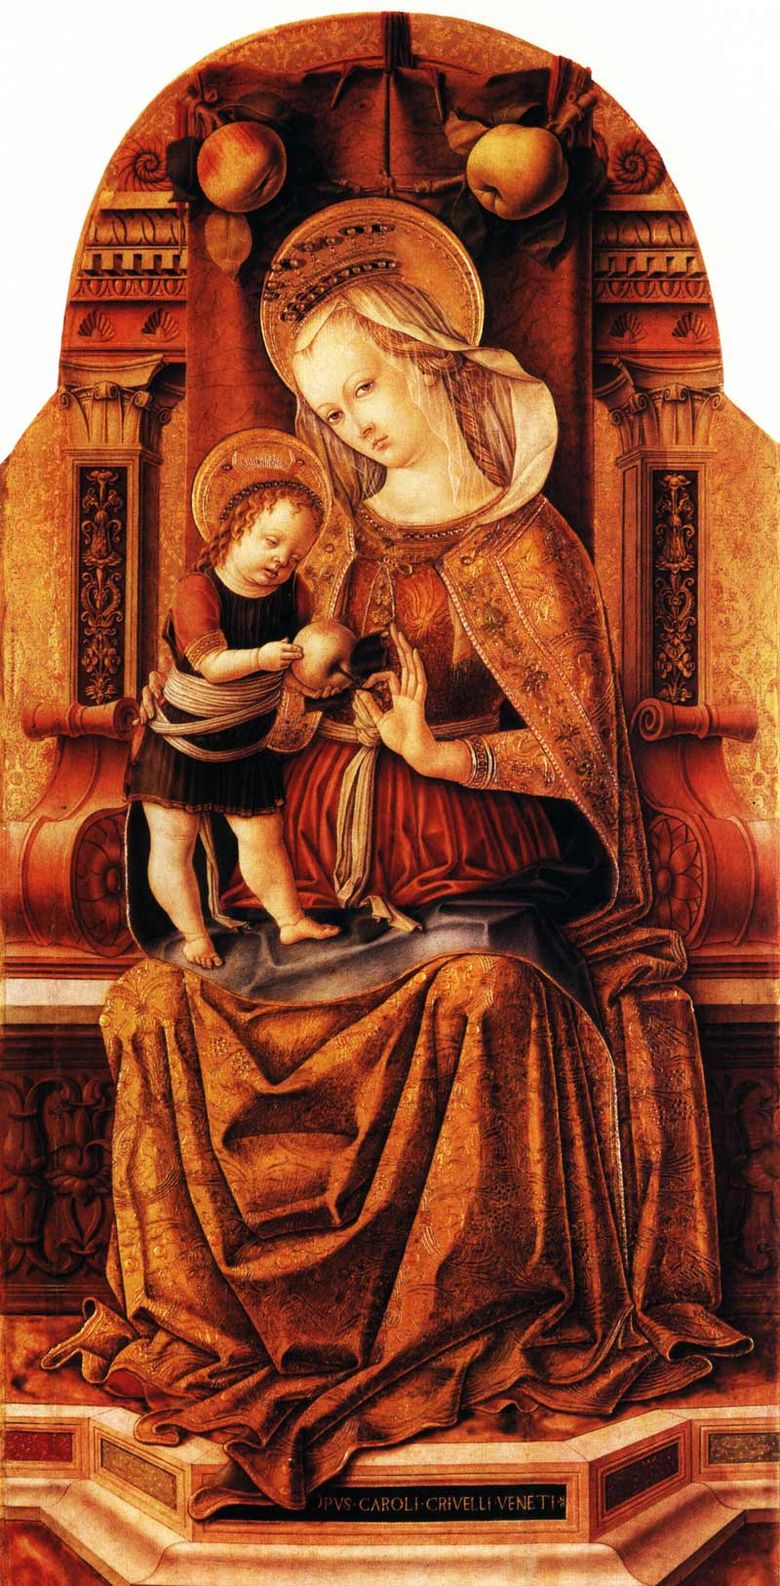 Maria avec le bébé sur le trône   Carlo Crivelli